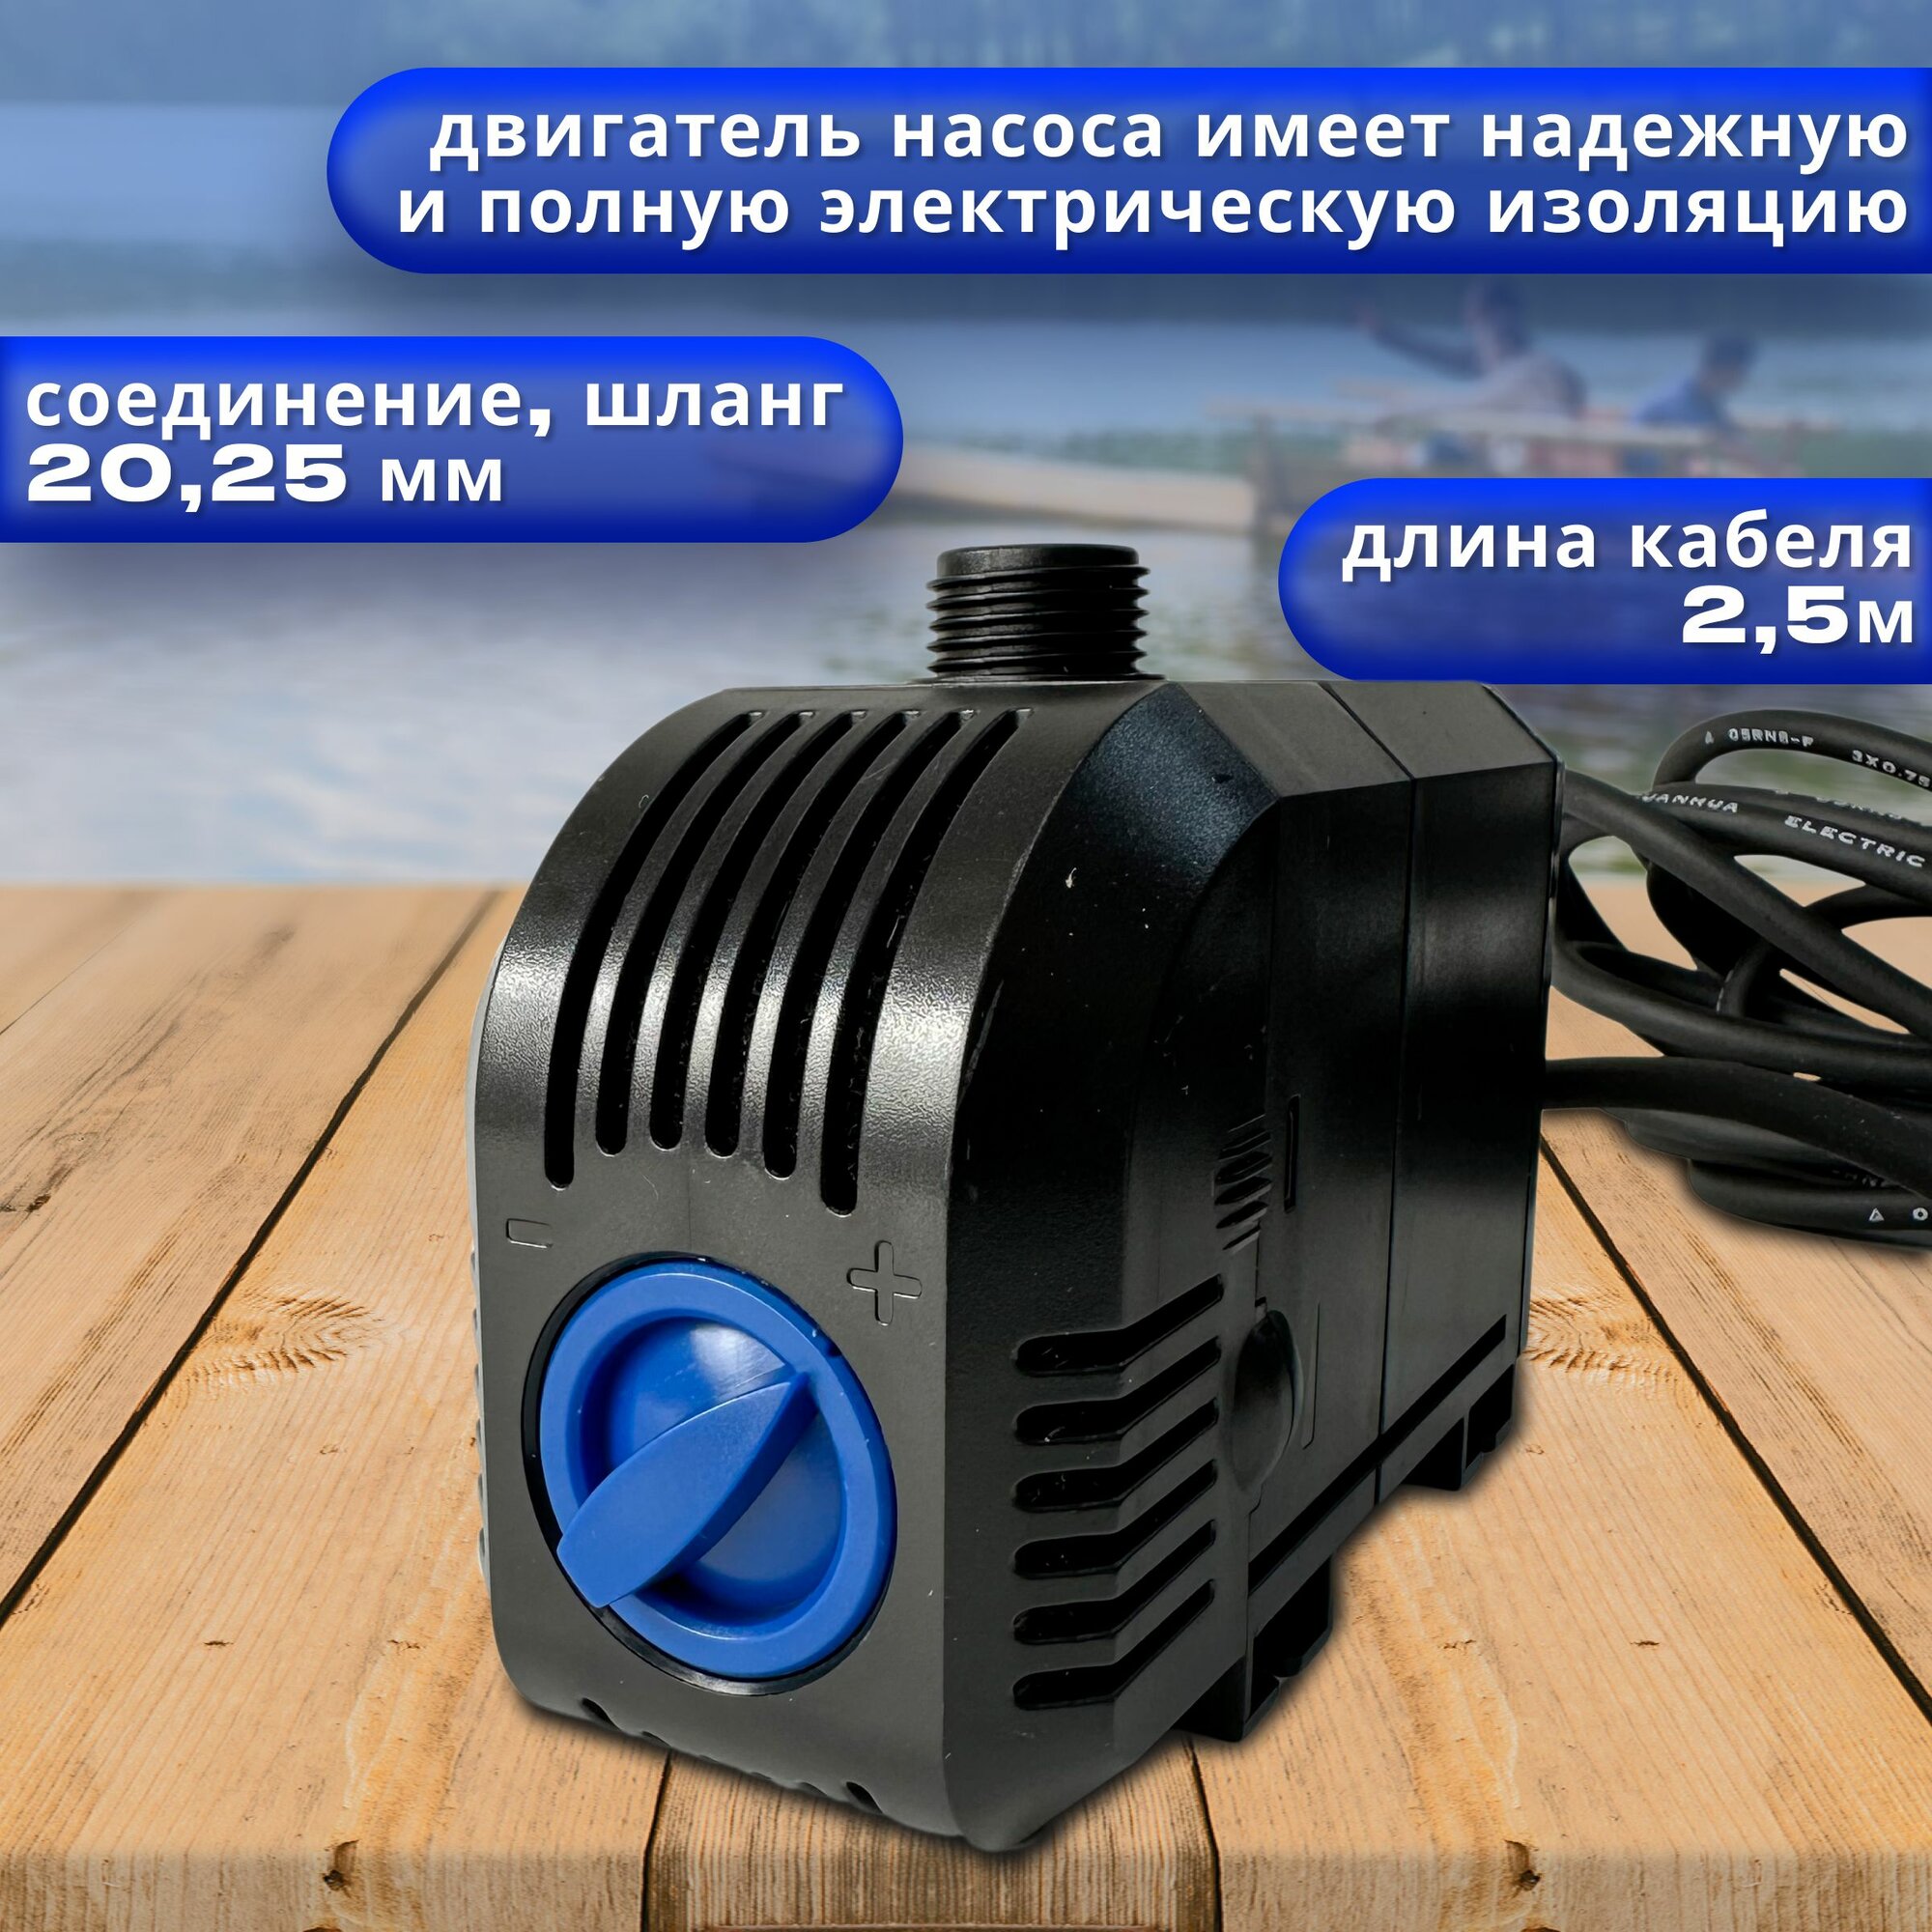 Насос для фонтана регулируемый SunSun HJ 2500, производительность 2500 л/час, длина кабеля 2,5м